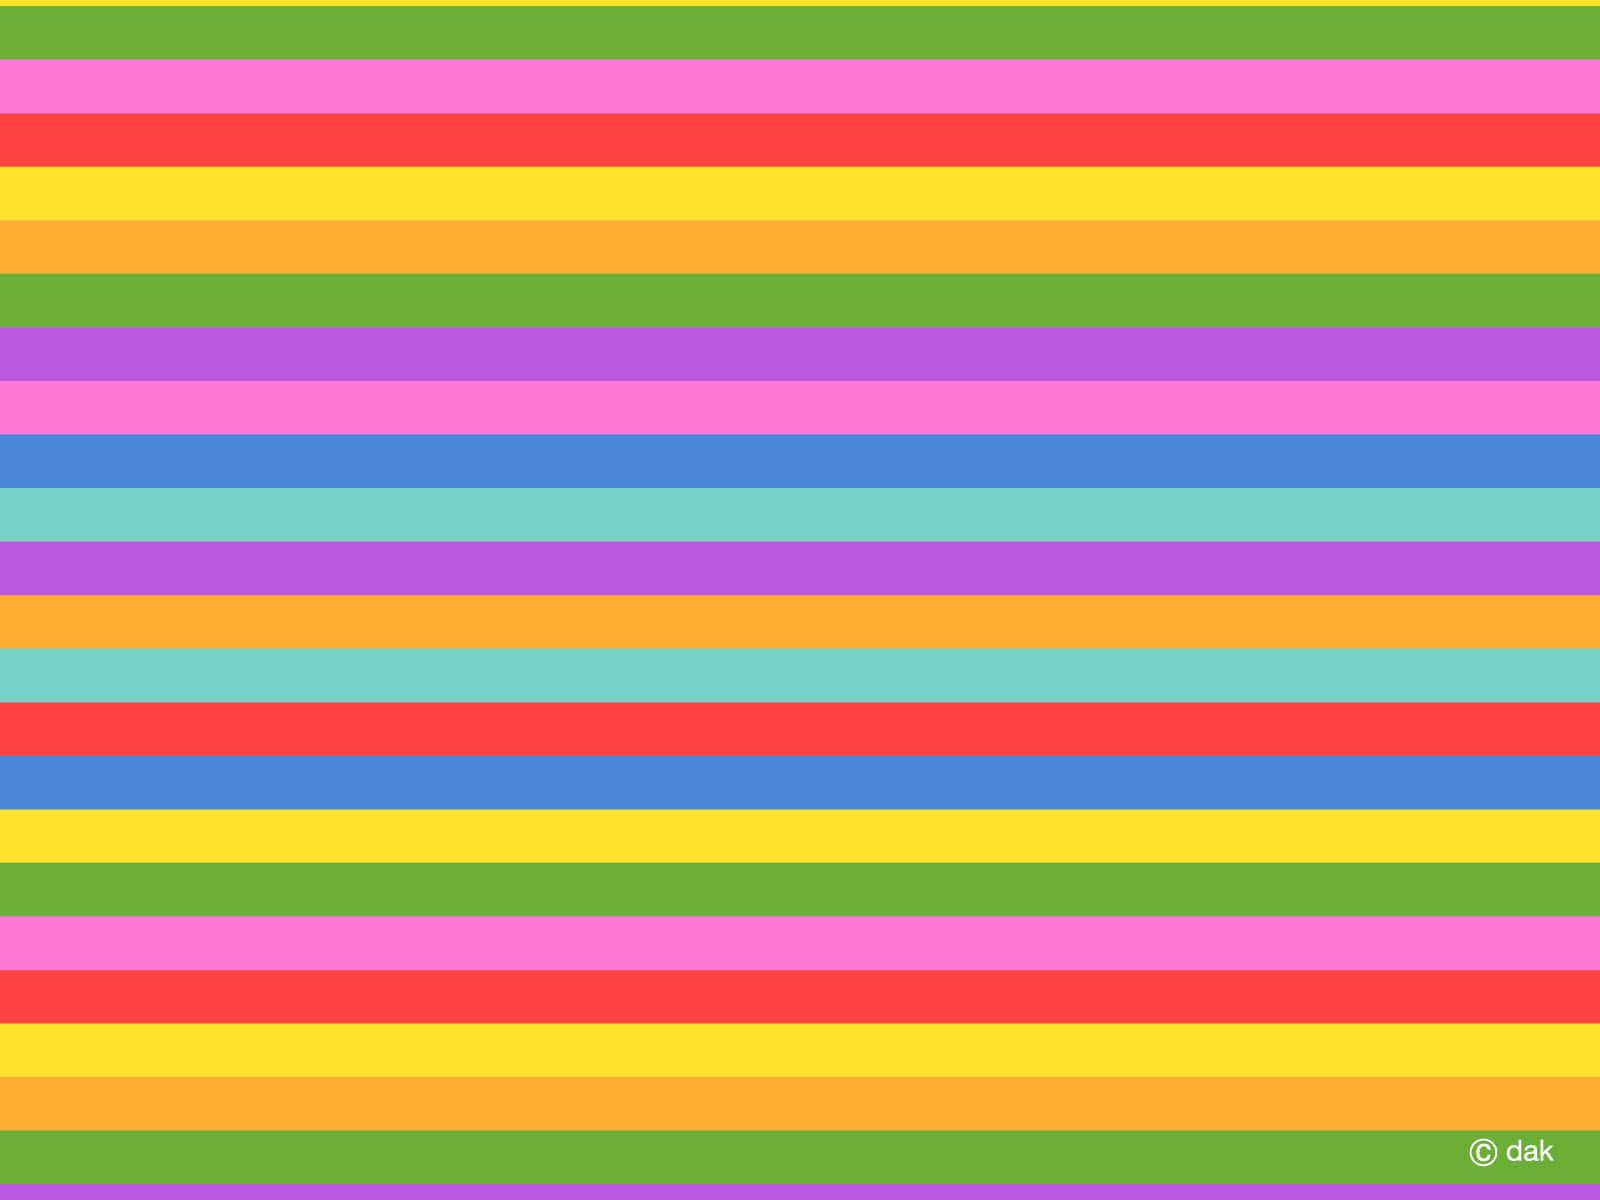 Imágenesde La Bandera De Colores Del Arcoíris En Formato Horizontal.